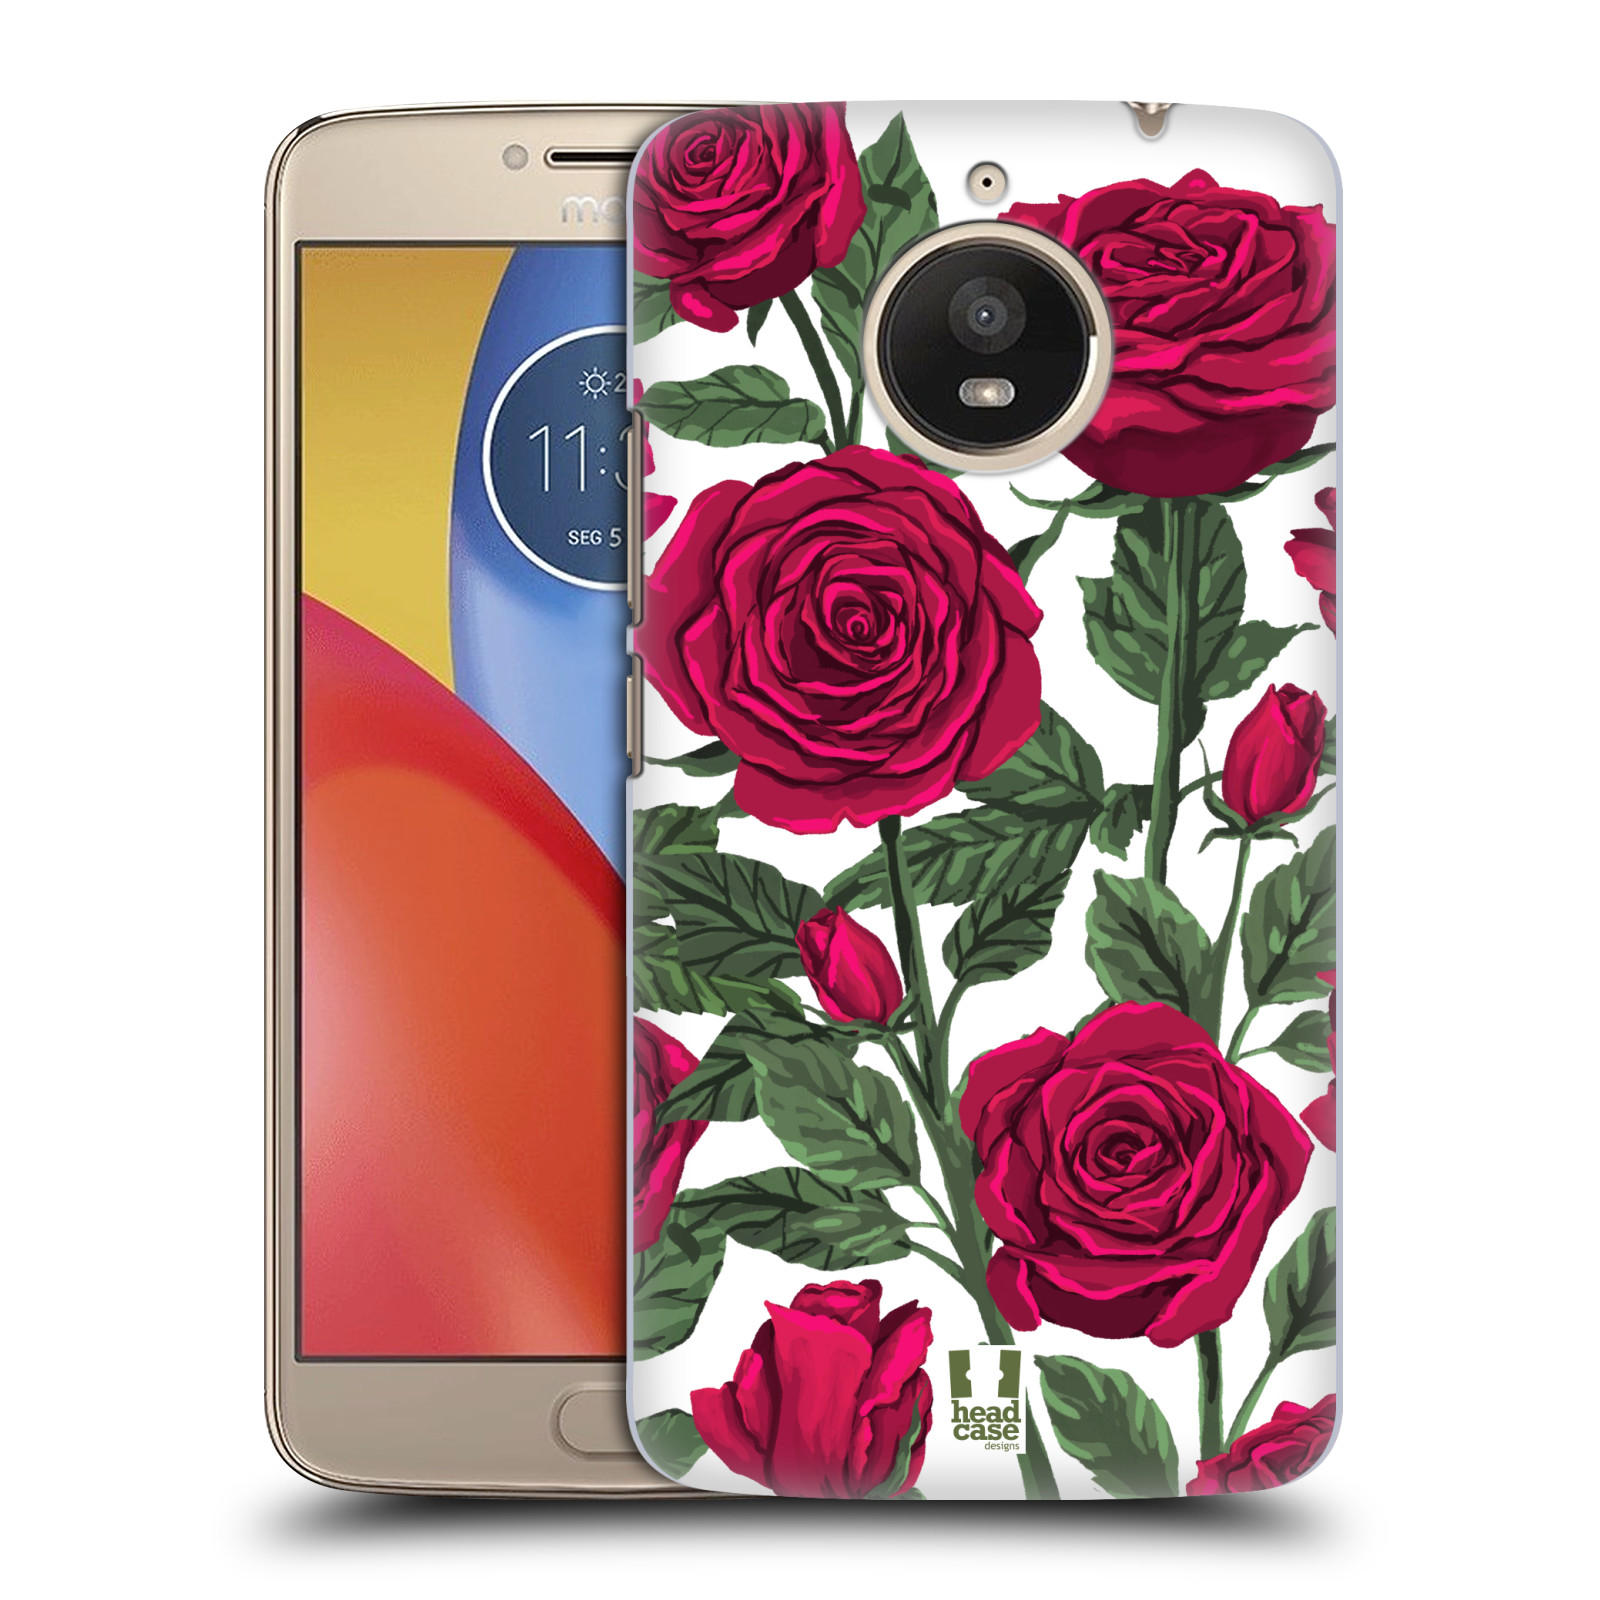 Pouzdro na mobil Lenovo Moto E4 PLUS - HEAD CASE - květina růže